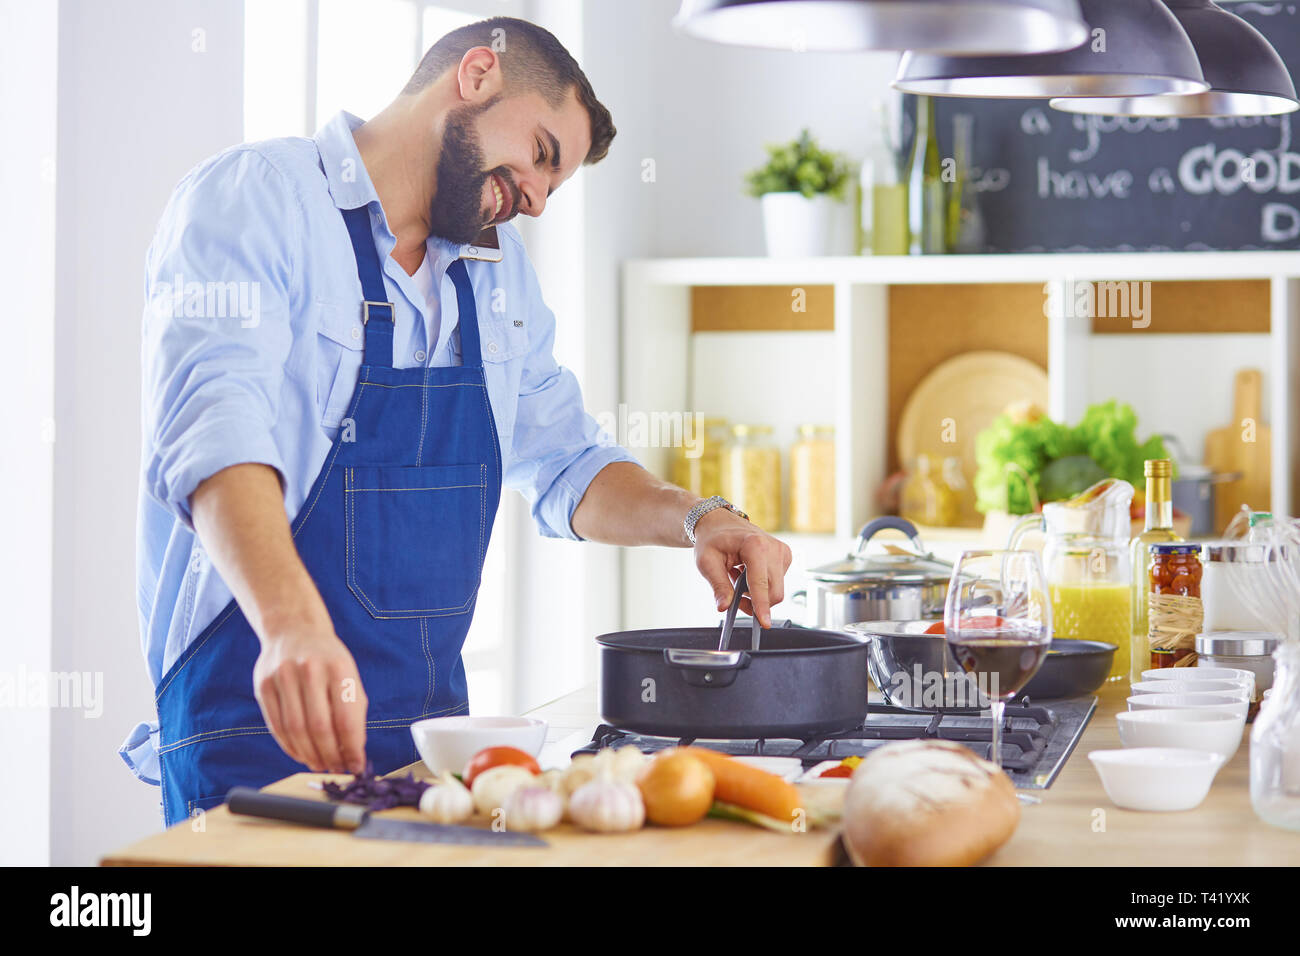 Kochen, Beruf und Personen Konzept - männliche Küchenchef mit Smartphone im Restaurant Küche. Stockfoto